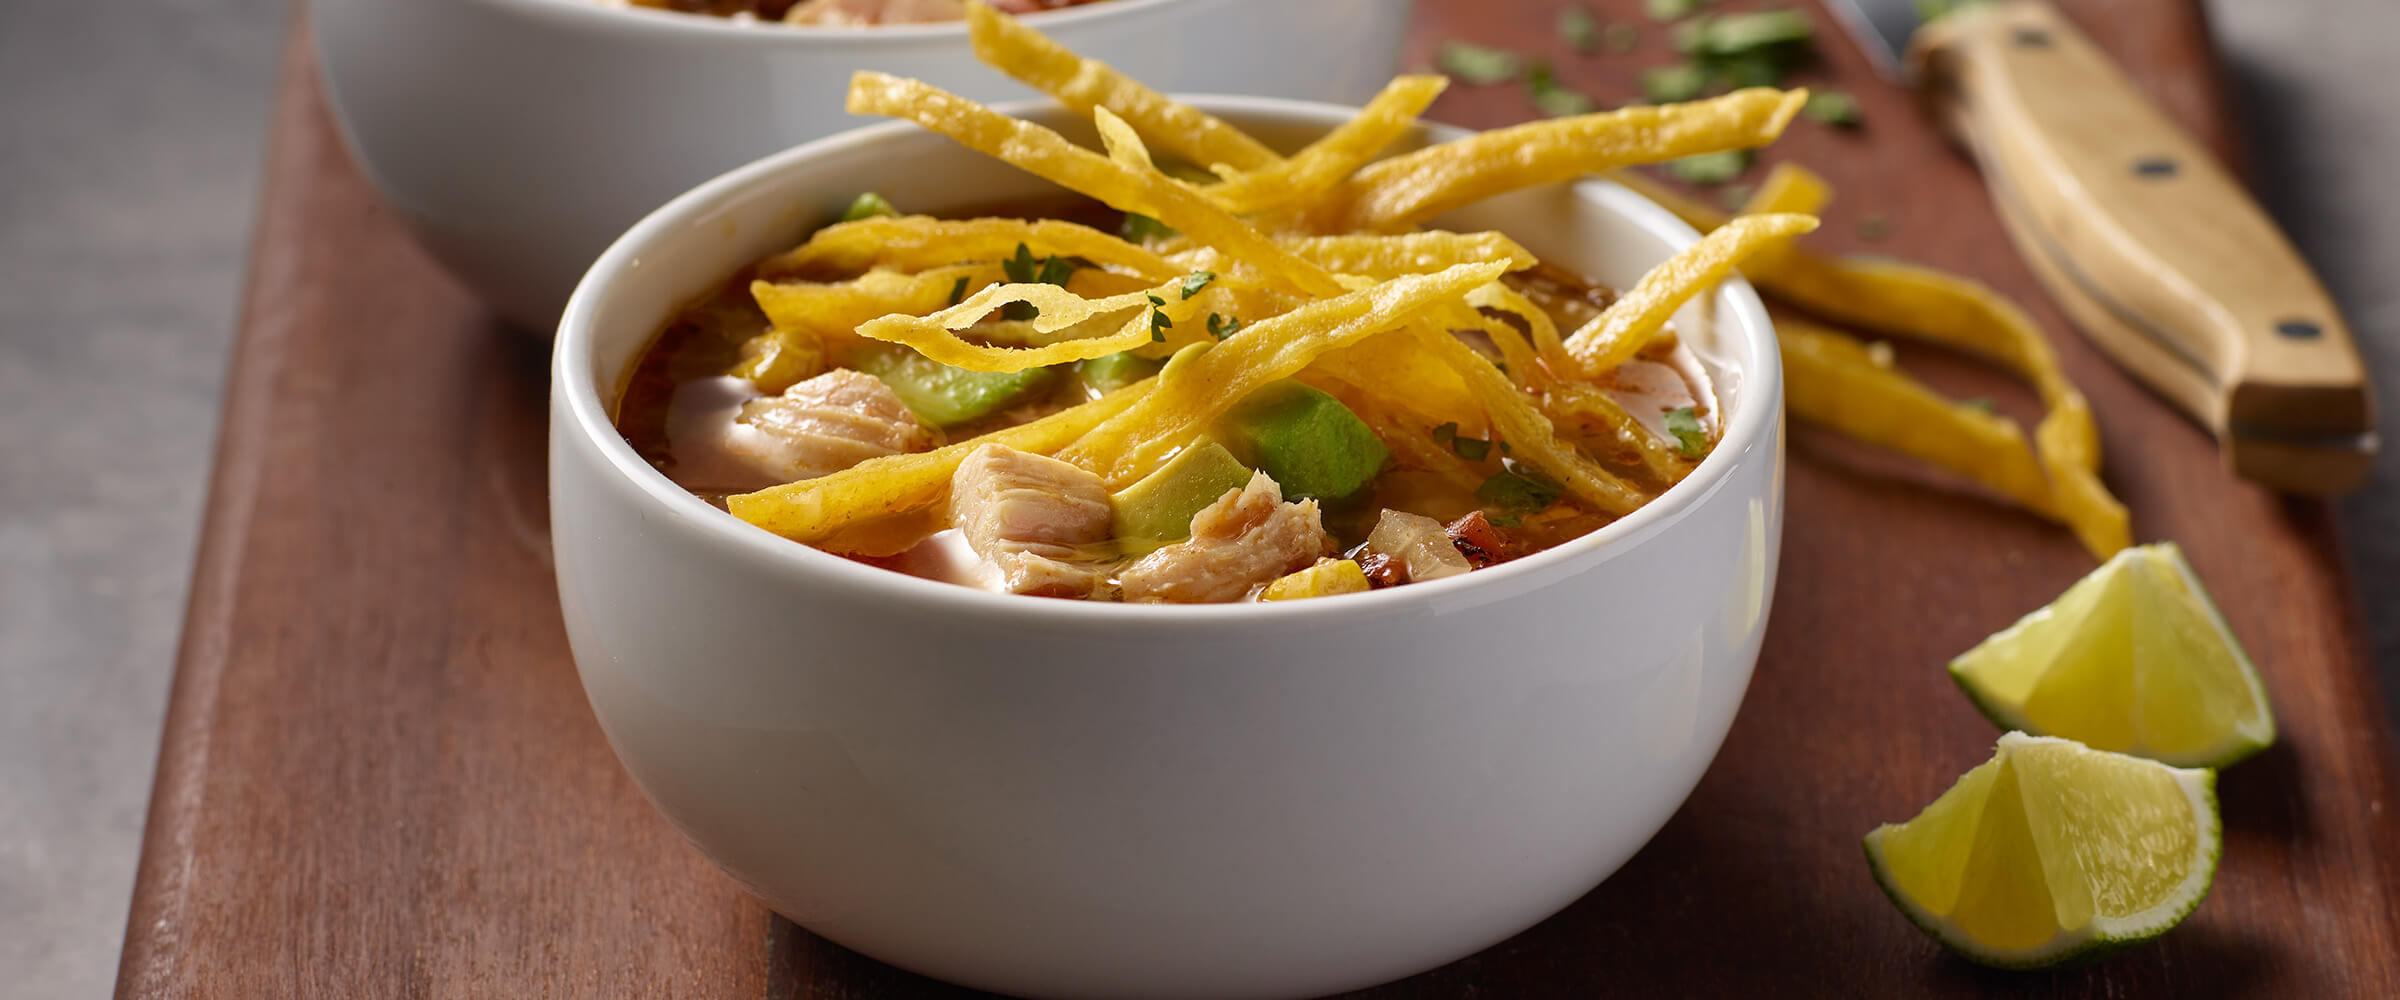 https://www.hormelfoods.com/wp-content/uploads/Chicken_Tortilla_Soup-recipe-2400x1000-3.jpg